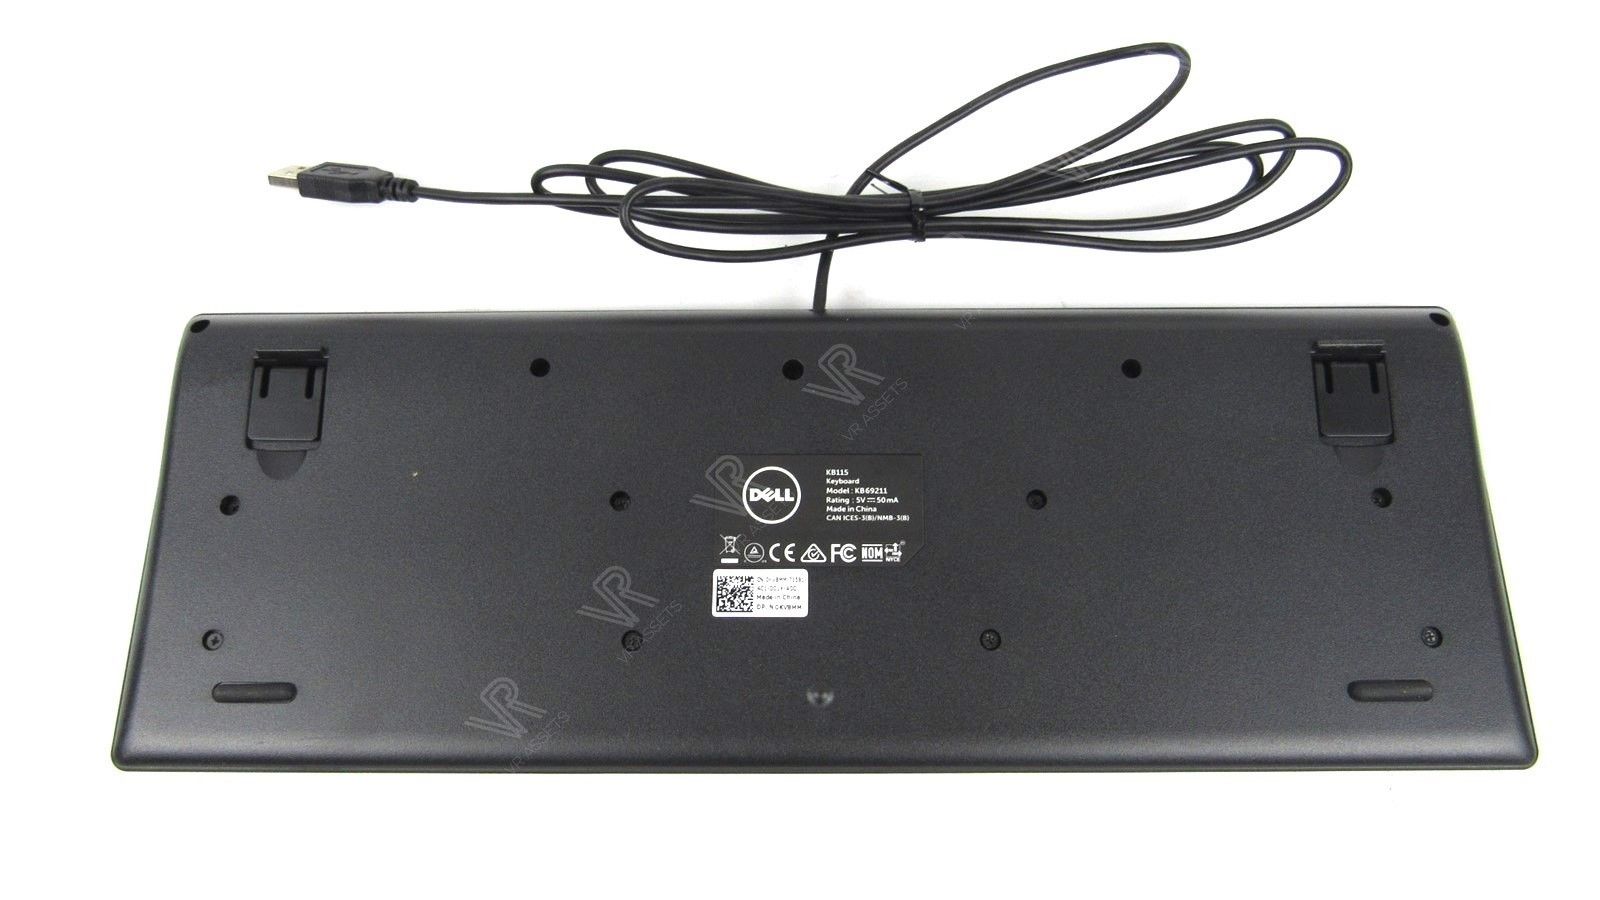 Dell USB Slim Wired Multimedia Keyboard for Google Chrome KB69211 KV8MM 0KV8MM